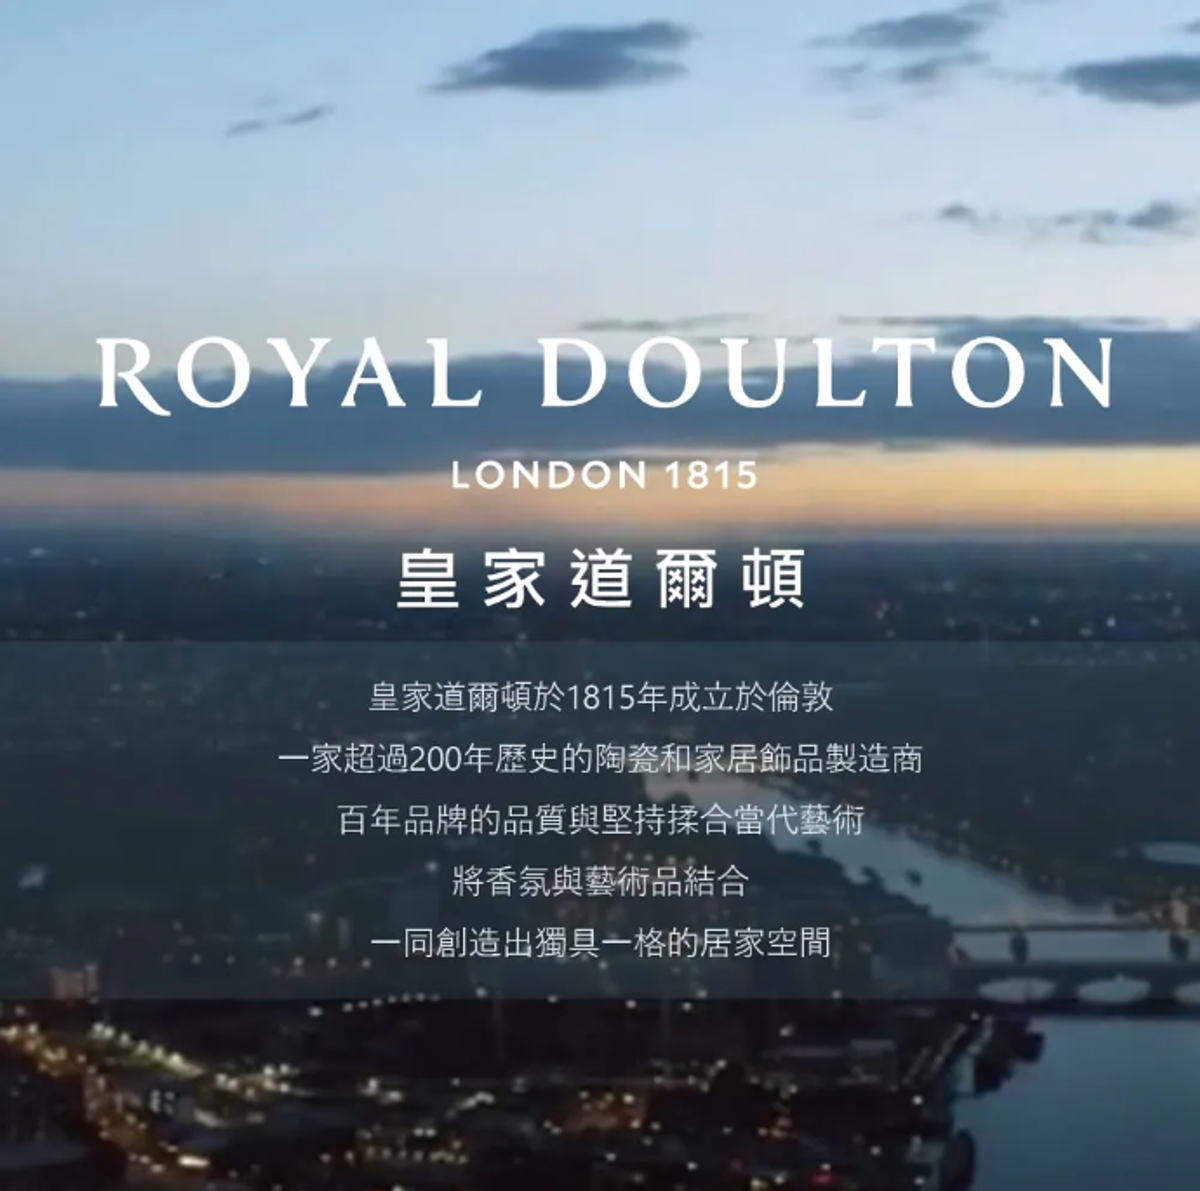 Royal Doulton 皇家道爾頓